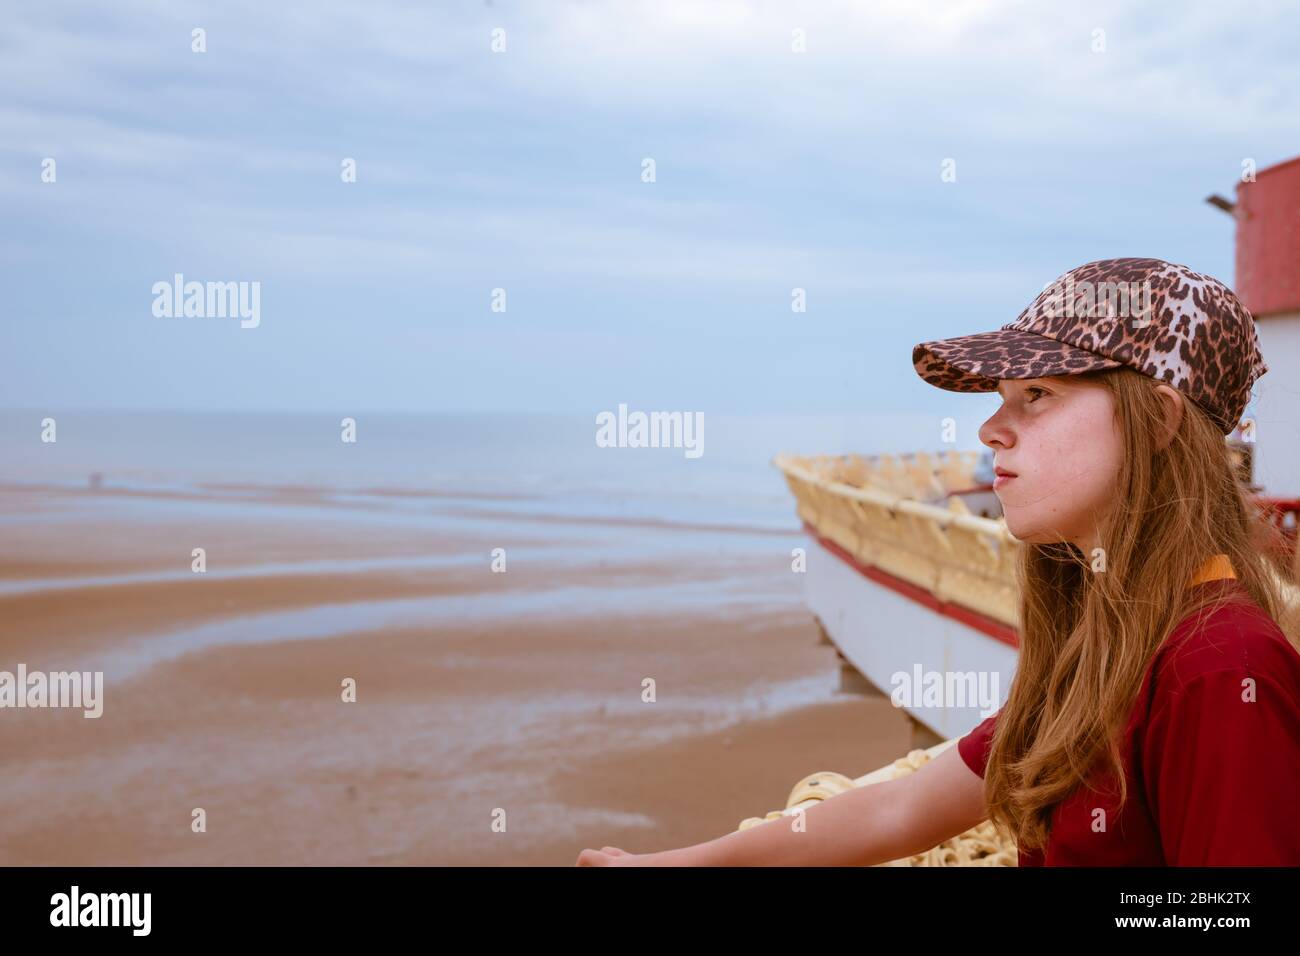 Une adolescente sur la jetée centrale de Blackpool en regardant de manière réfléchie sur la plage et la mer. Avec espace blanc Banque D'Images